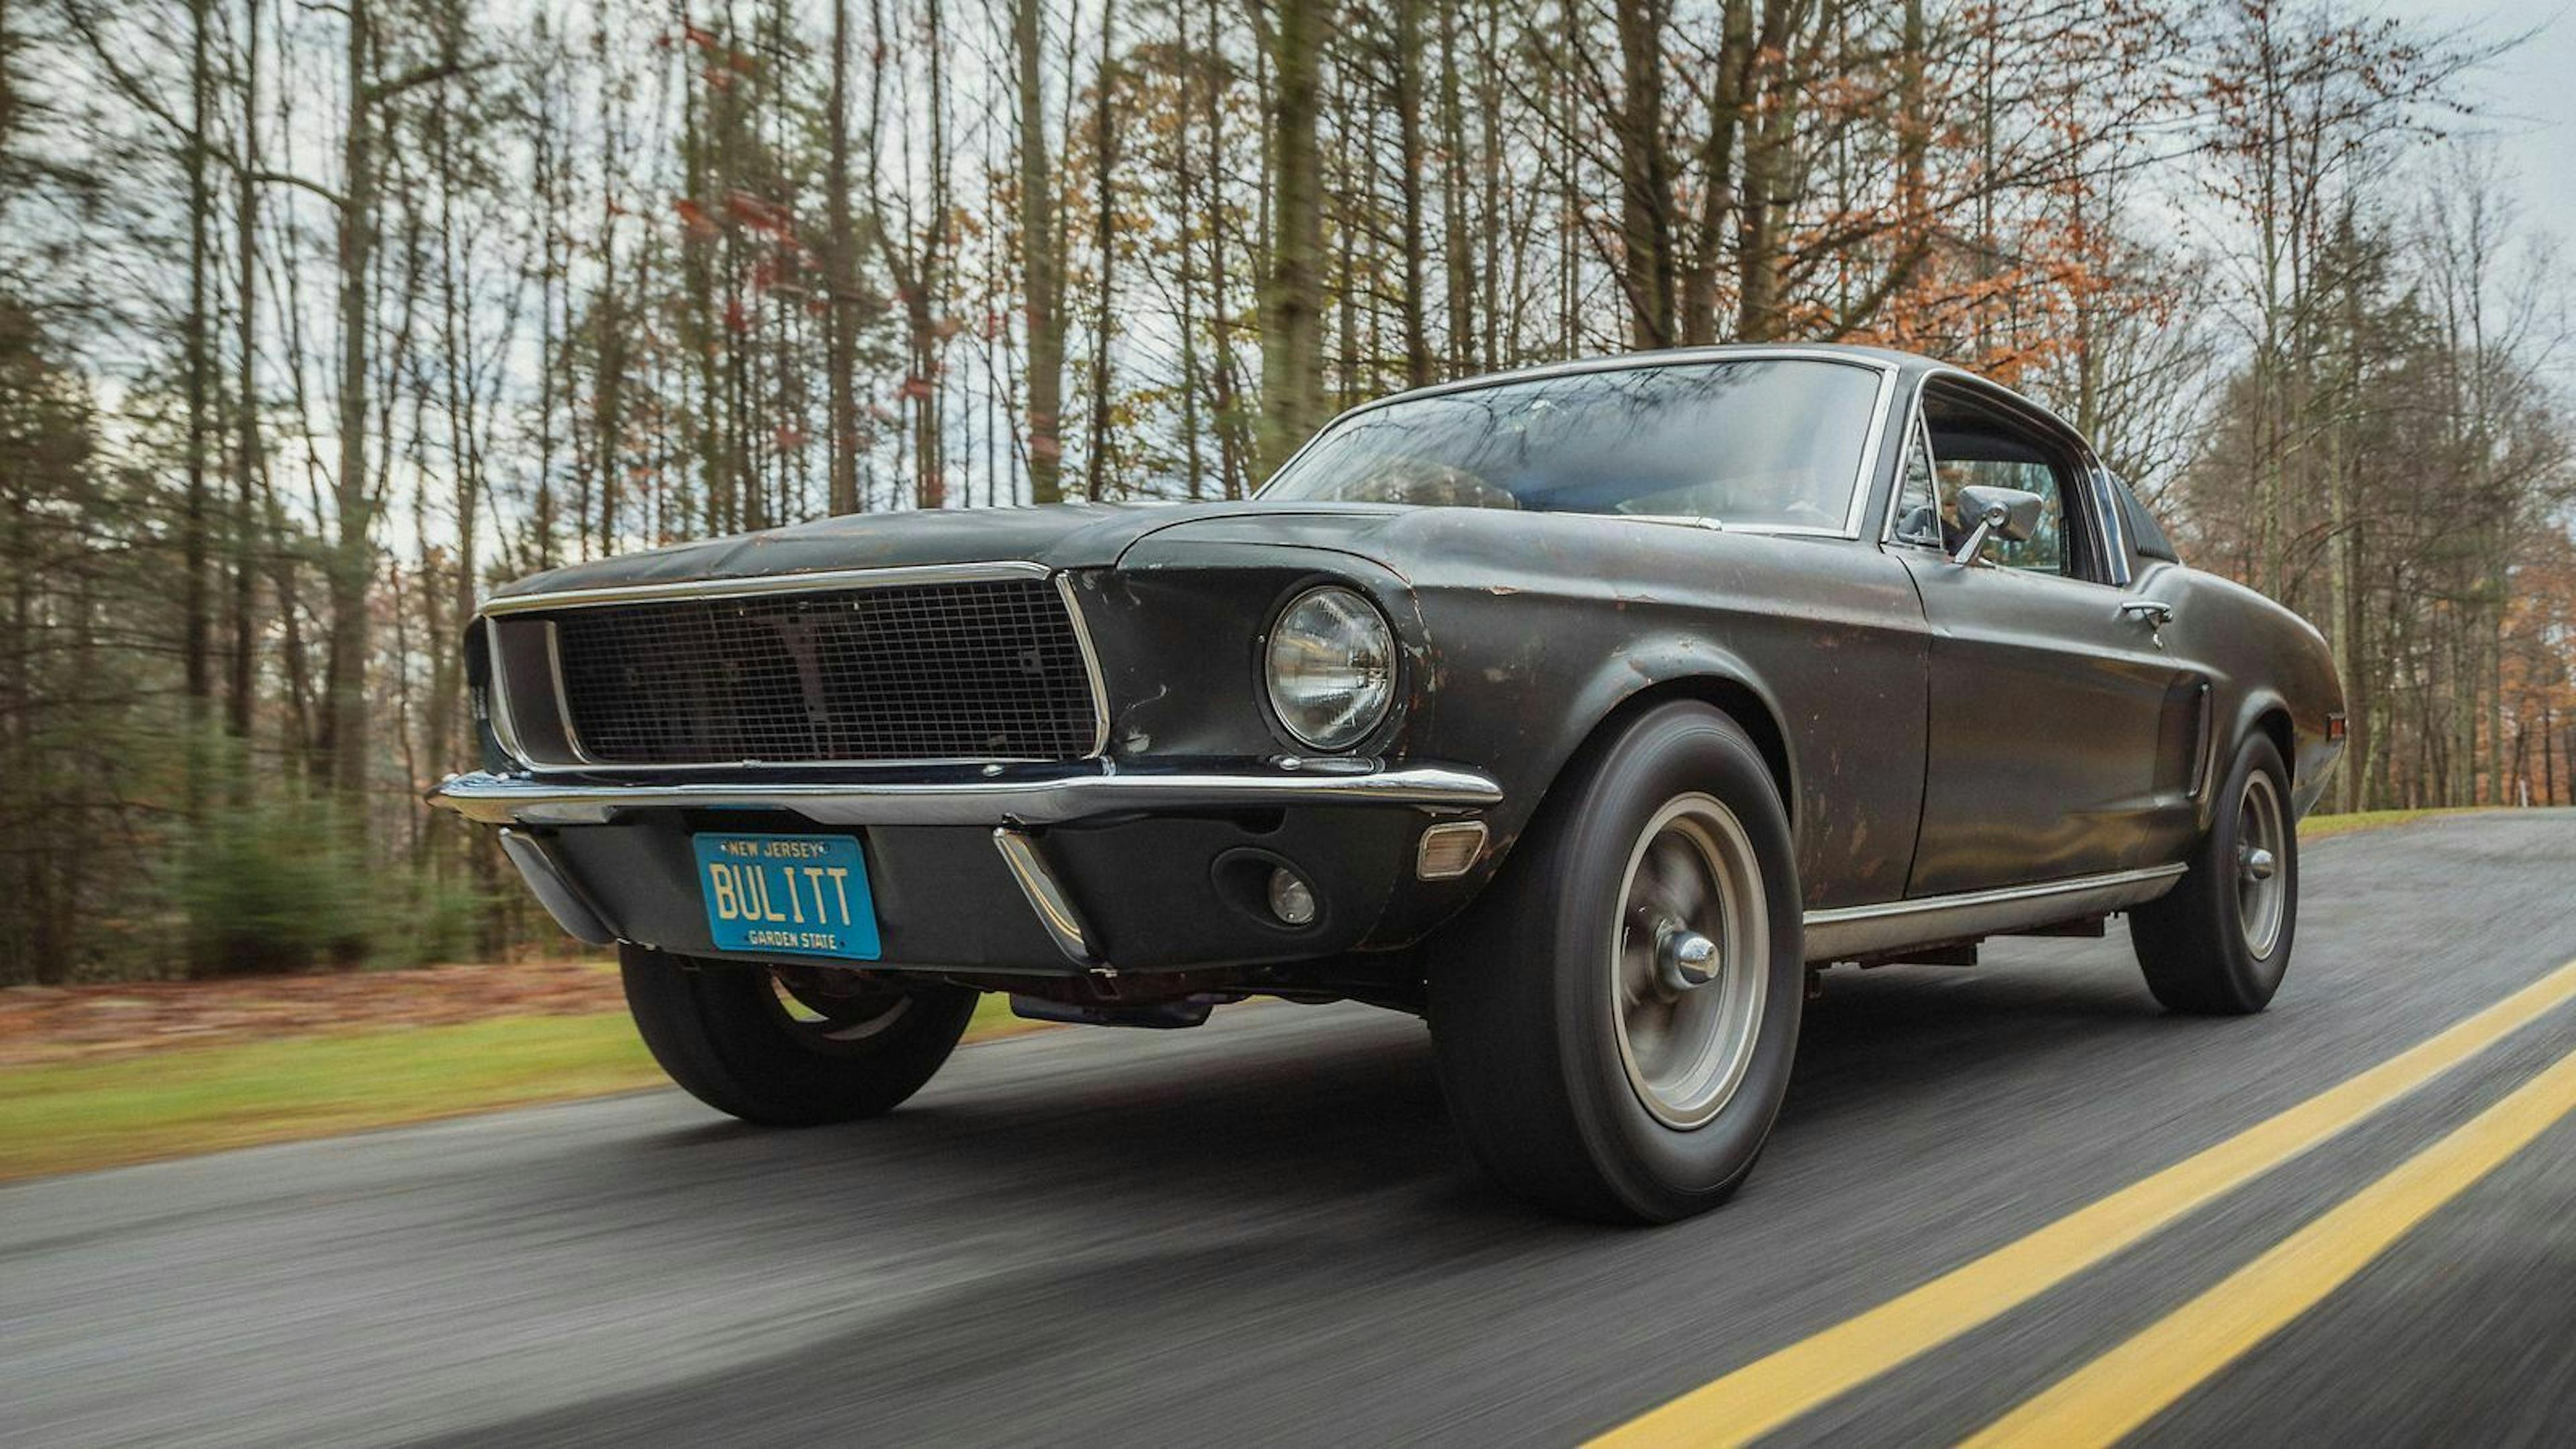 Zu sehen ist der Ford Mustang Bullitt von 1968, fahrend